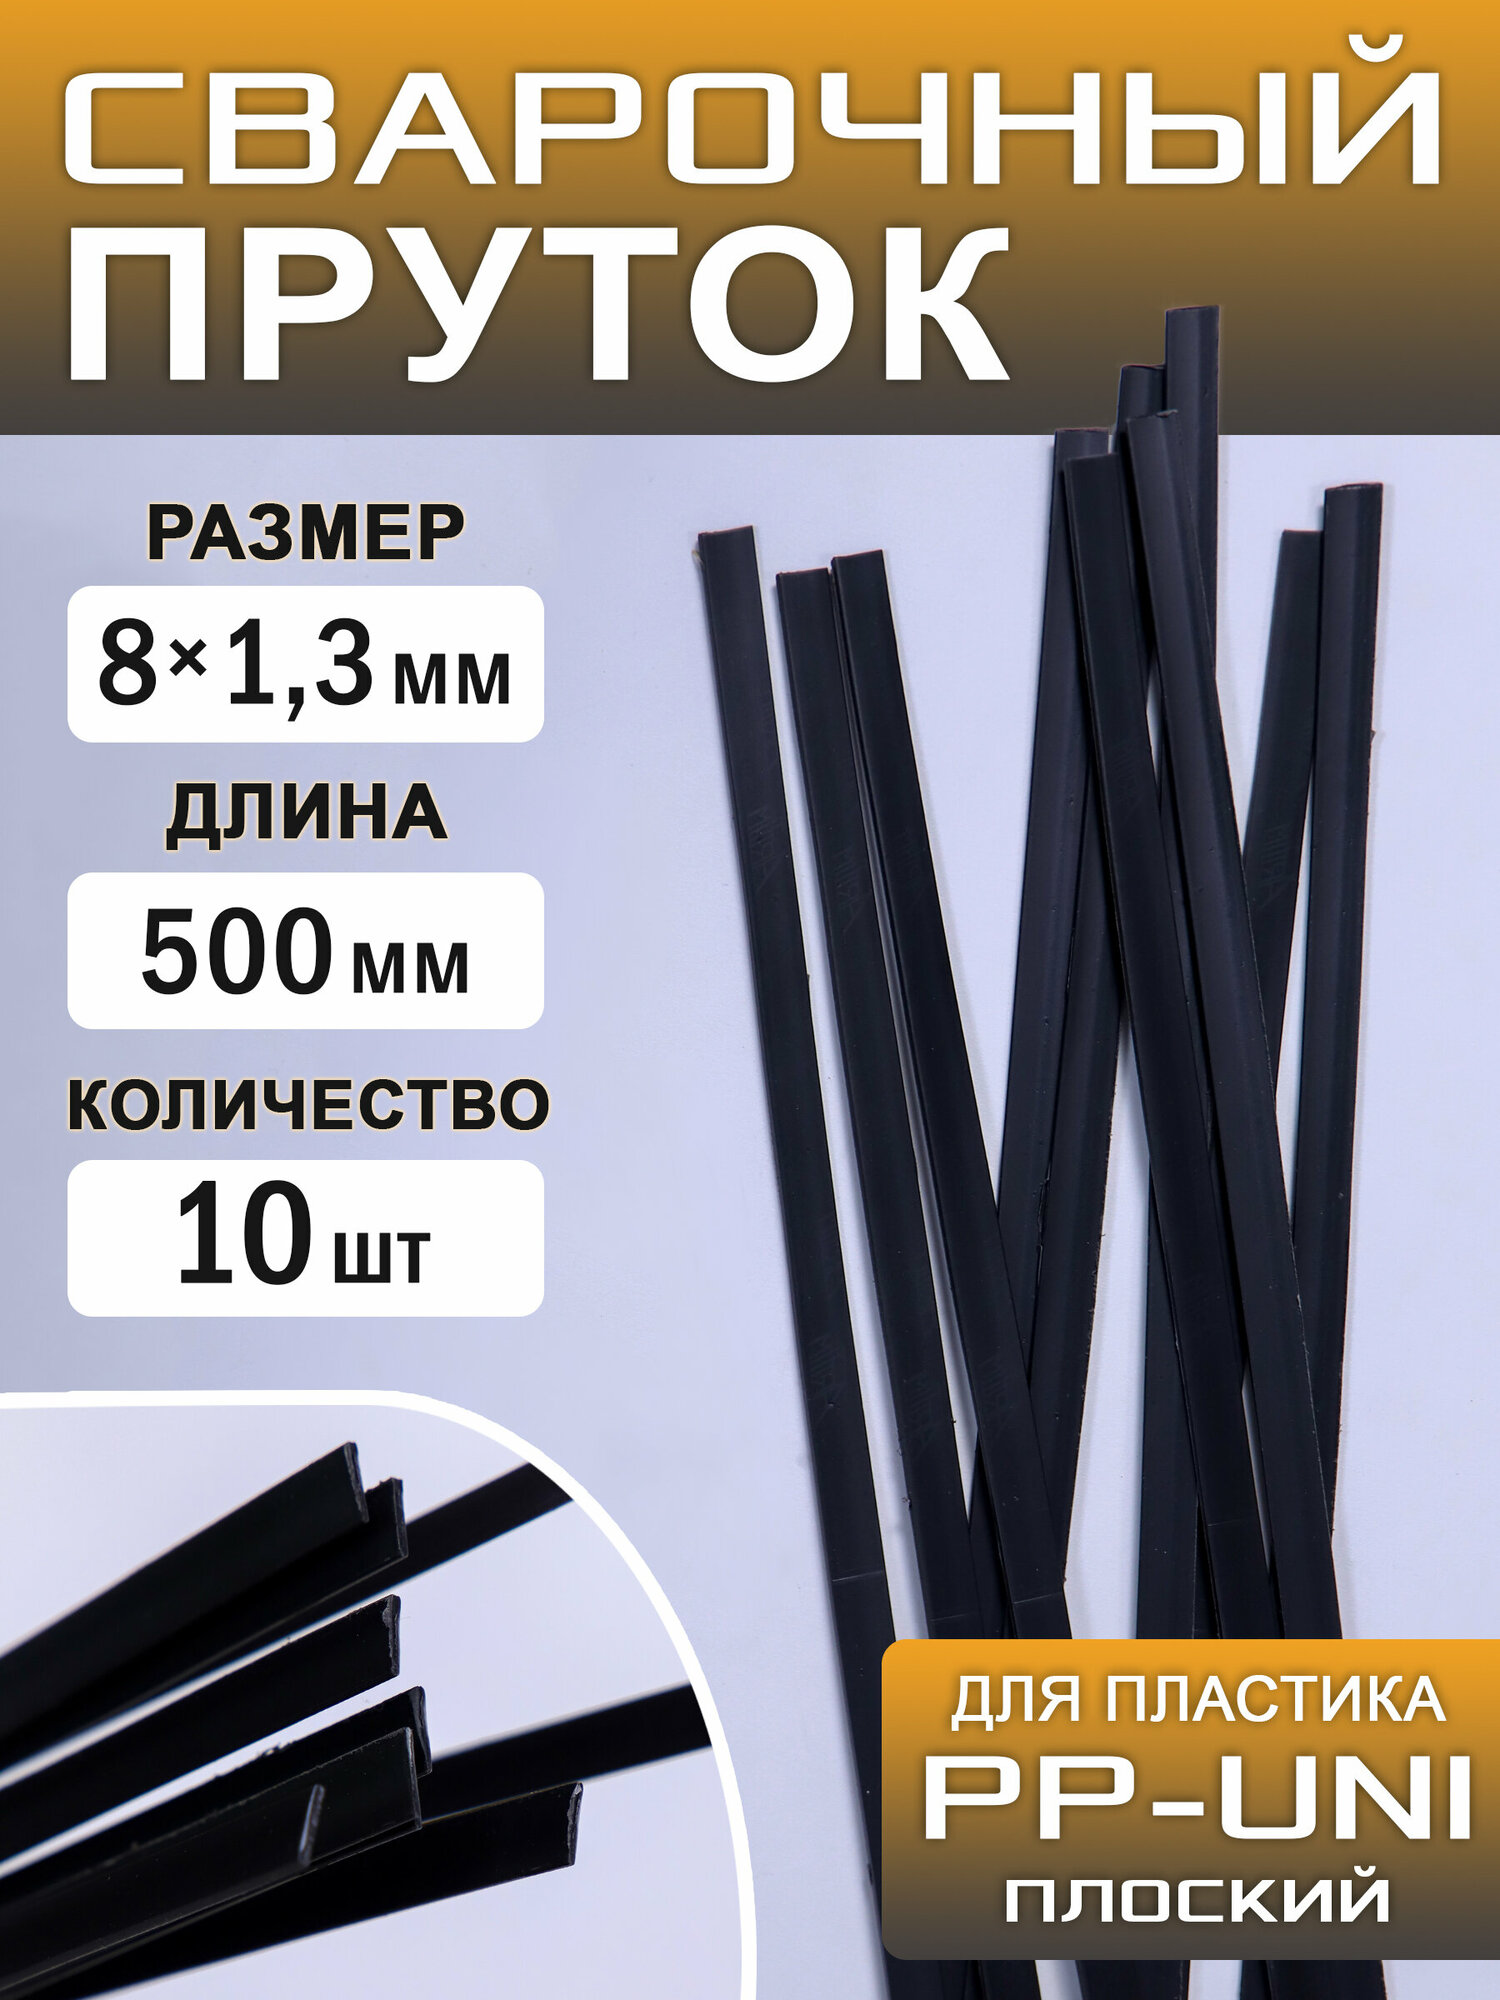 Сварочный пруток пластиковый плоский ПП (РР-uni) полипропиленовый 10 штук 500х8х13 мм ArtTim